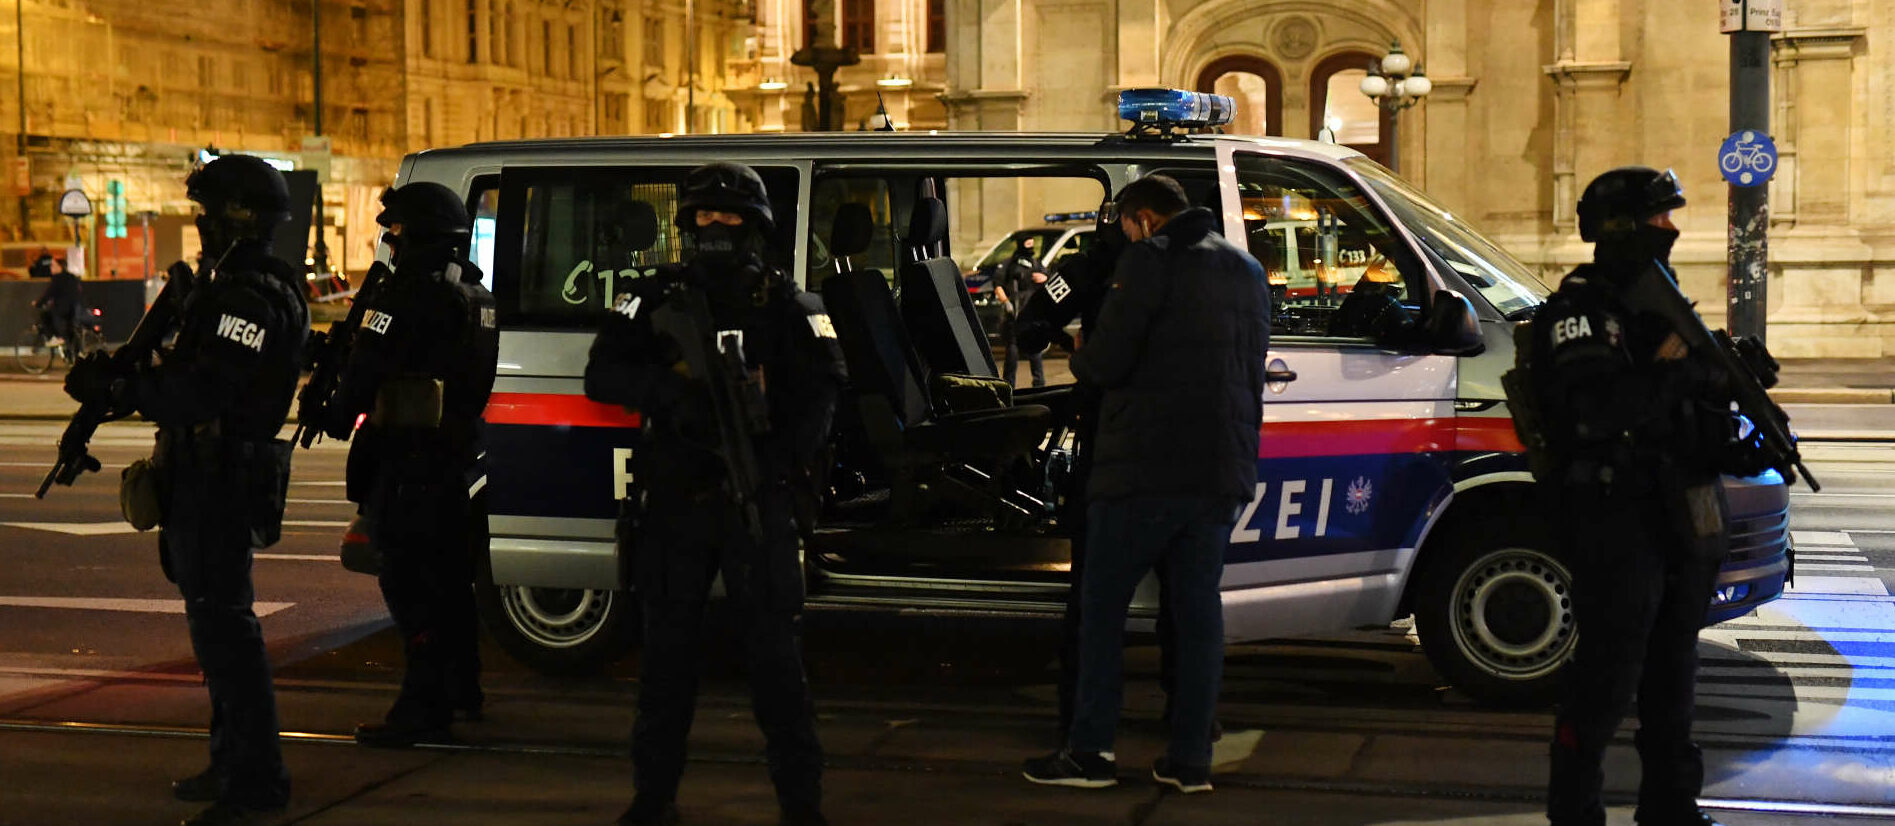 Am 2. November 2020 kam der Terror auch nach Österreich. Nun wird die Polizei entsprechend aufgerüstet.